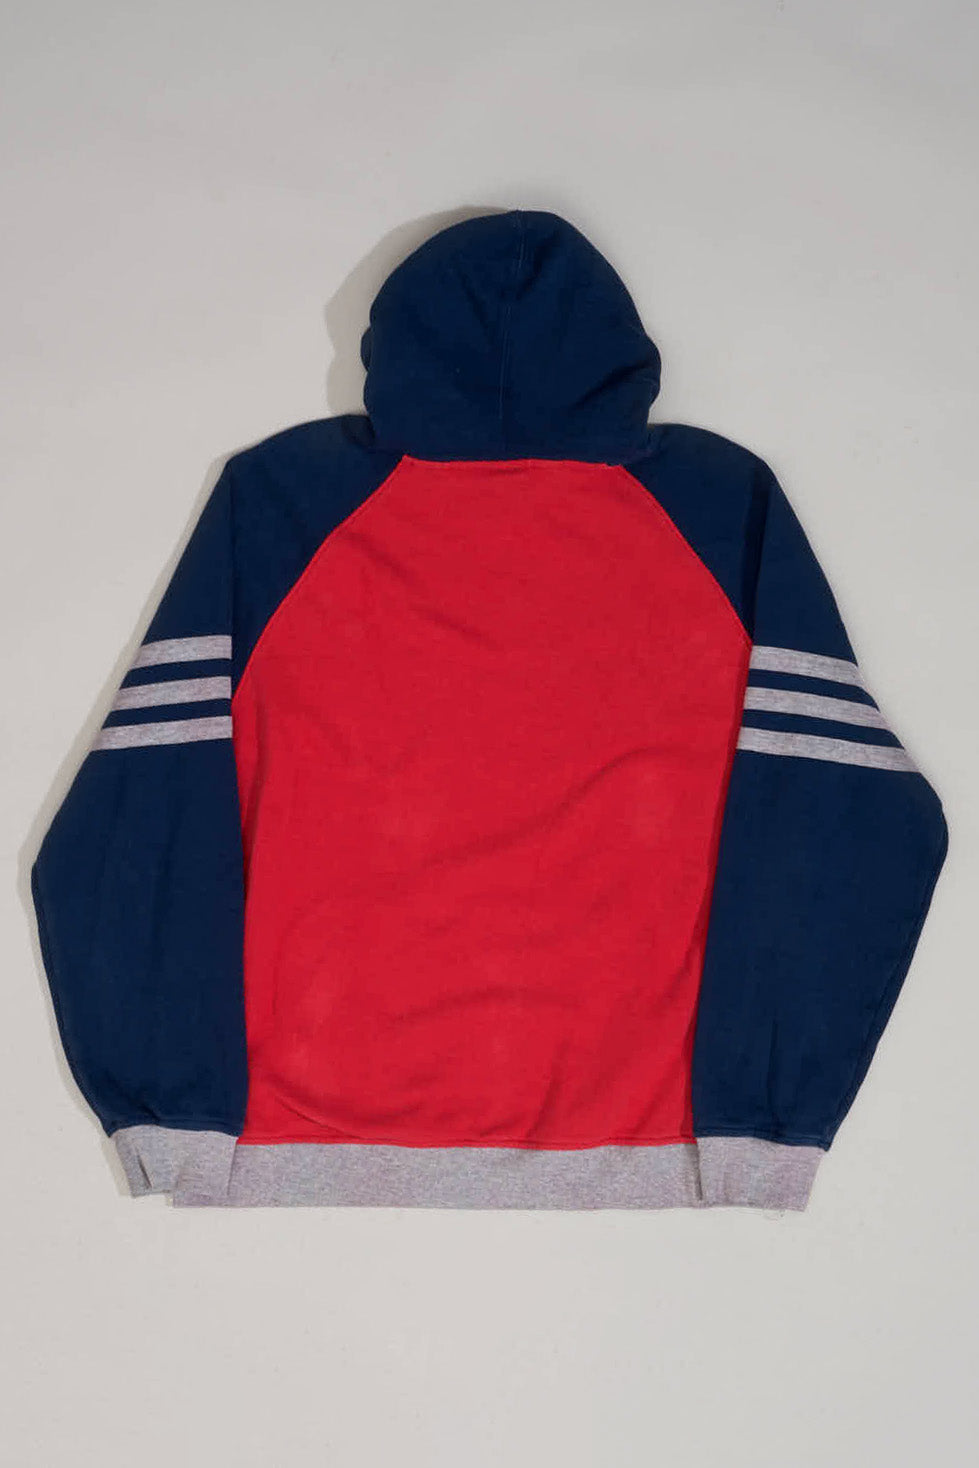 ADIDAS NY RED BULL Sweater - XL